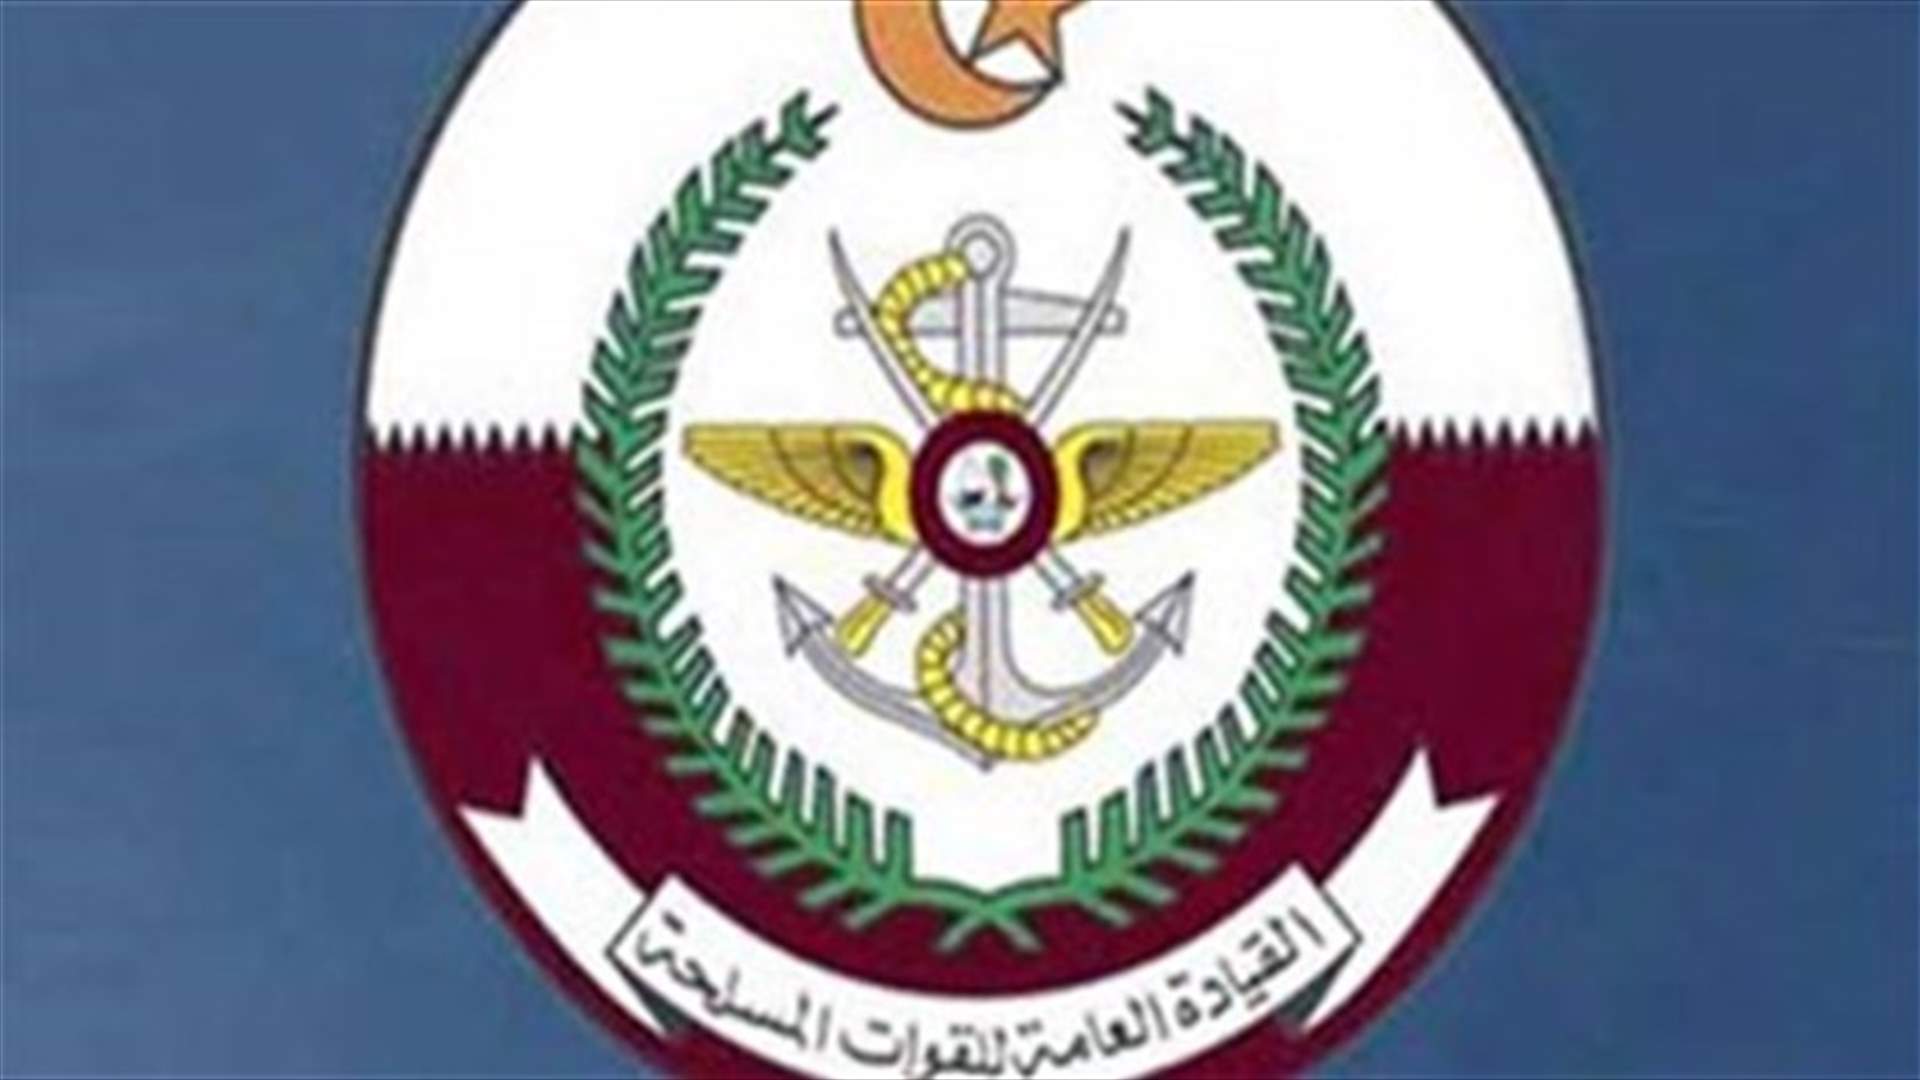 Three Qatari soldiers killed in Yemen - state news agency